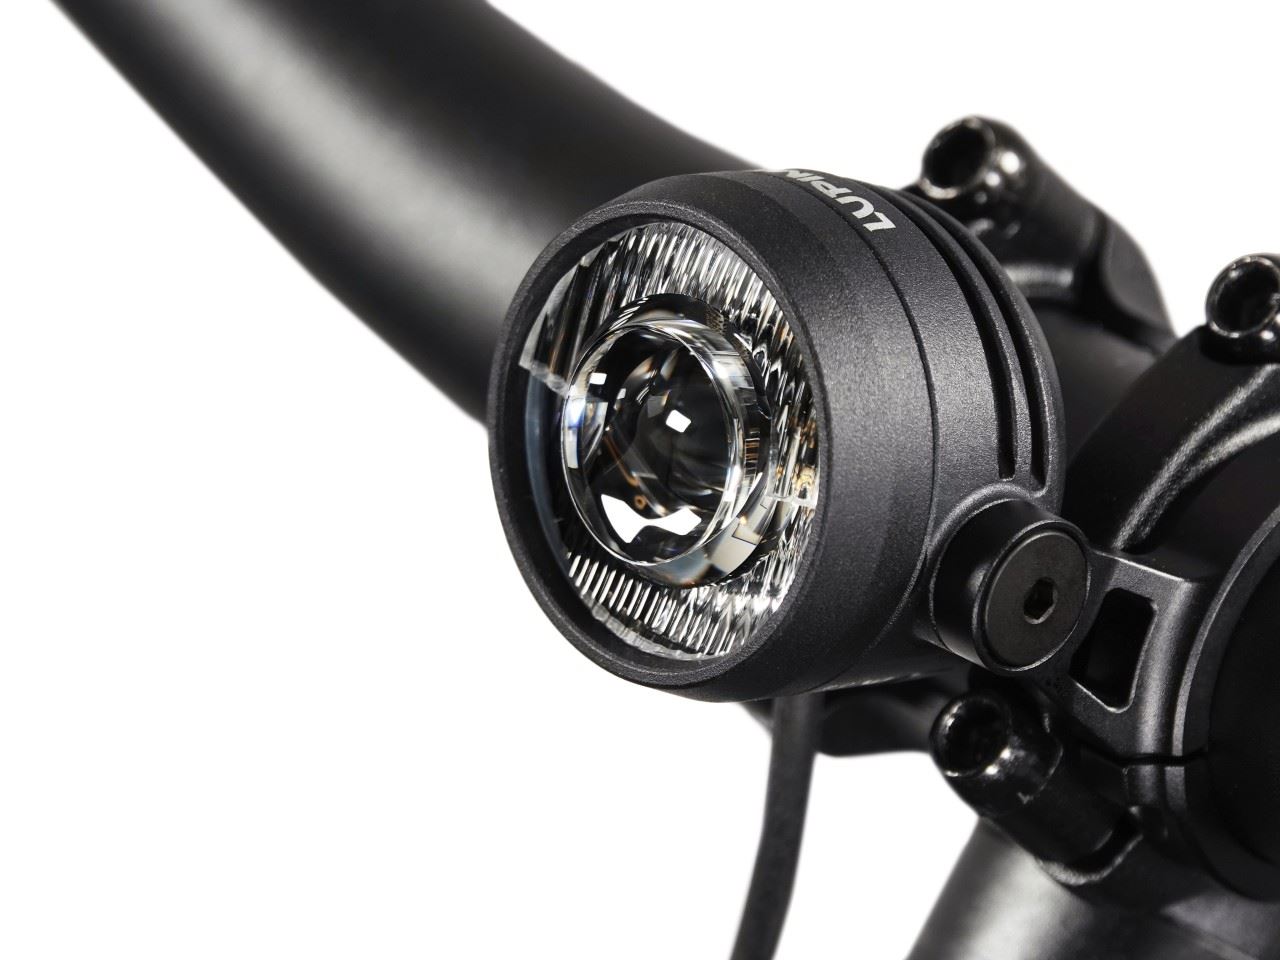 Produktbild von Lupine SL Nano für Shimano E-Bikes, LED Fahrradlampe, Lenkerhalter 35mm, Bluetooth Fernbedienung, 900 Lumen